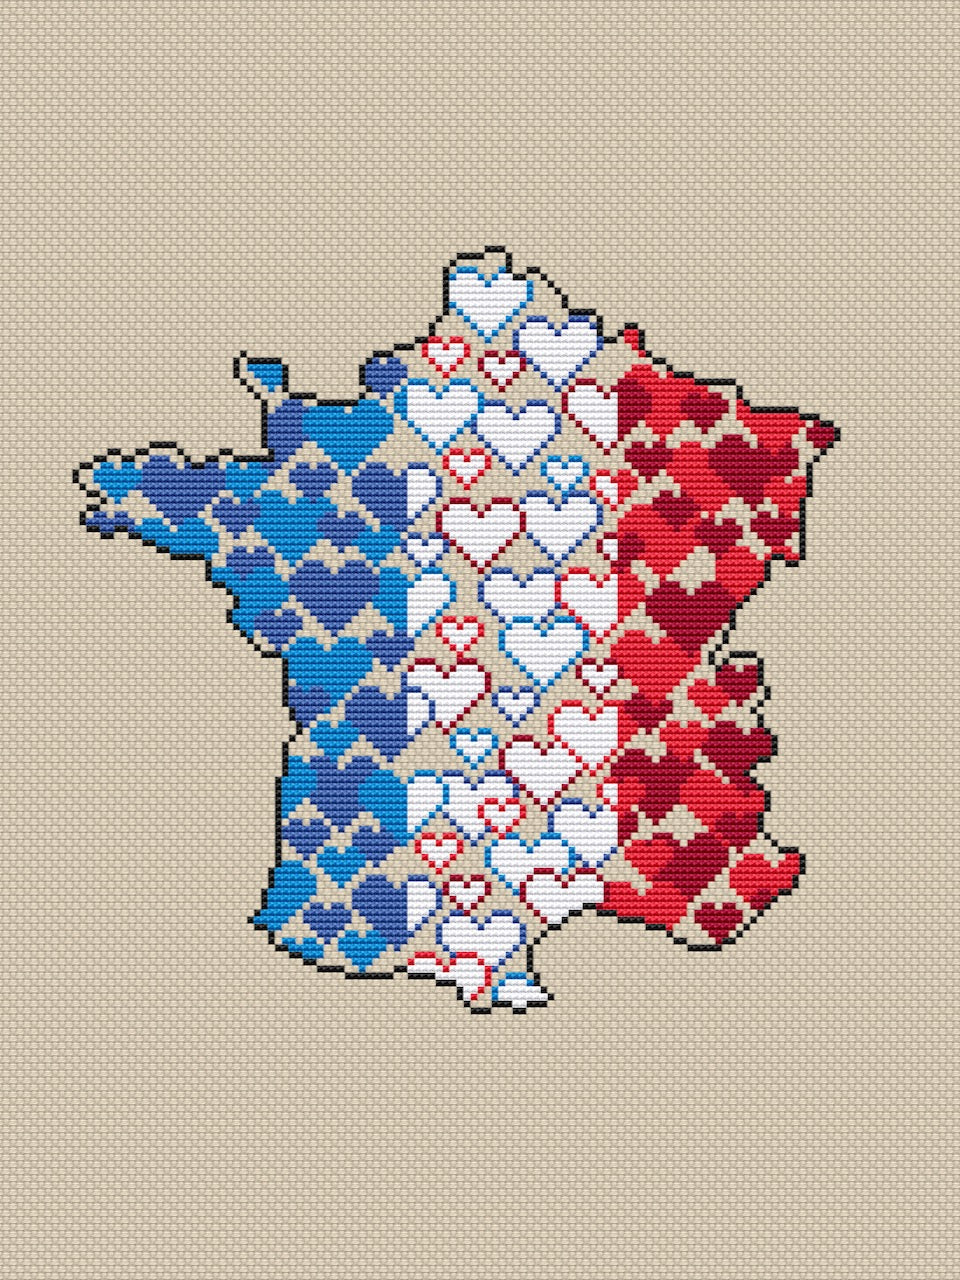 France cross stitch pattern